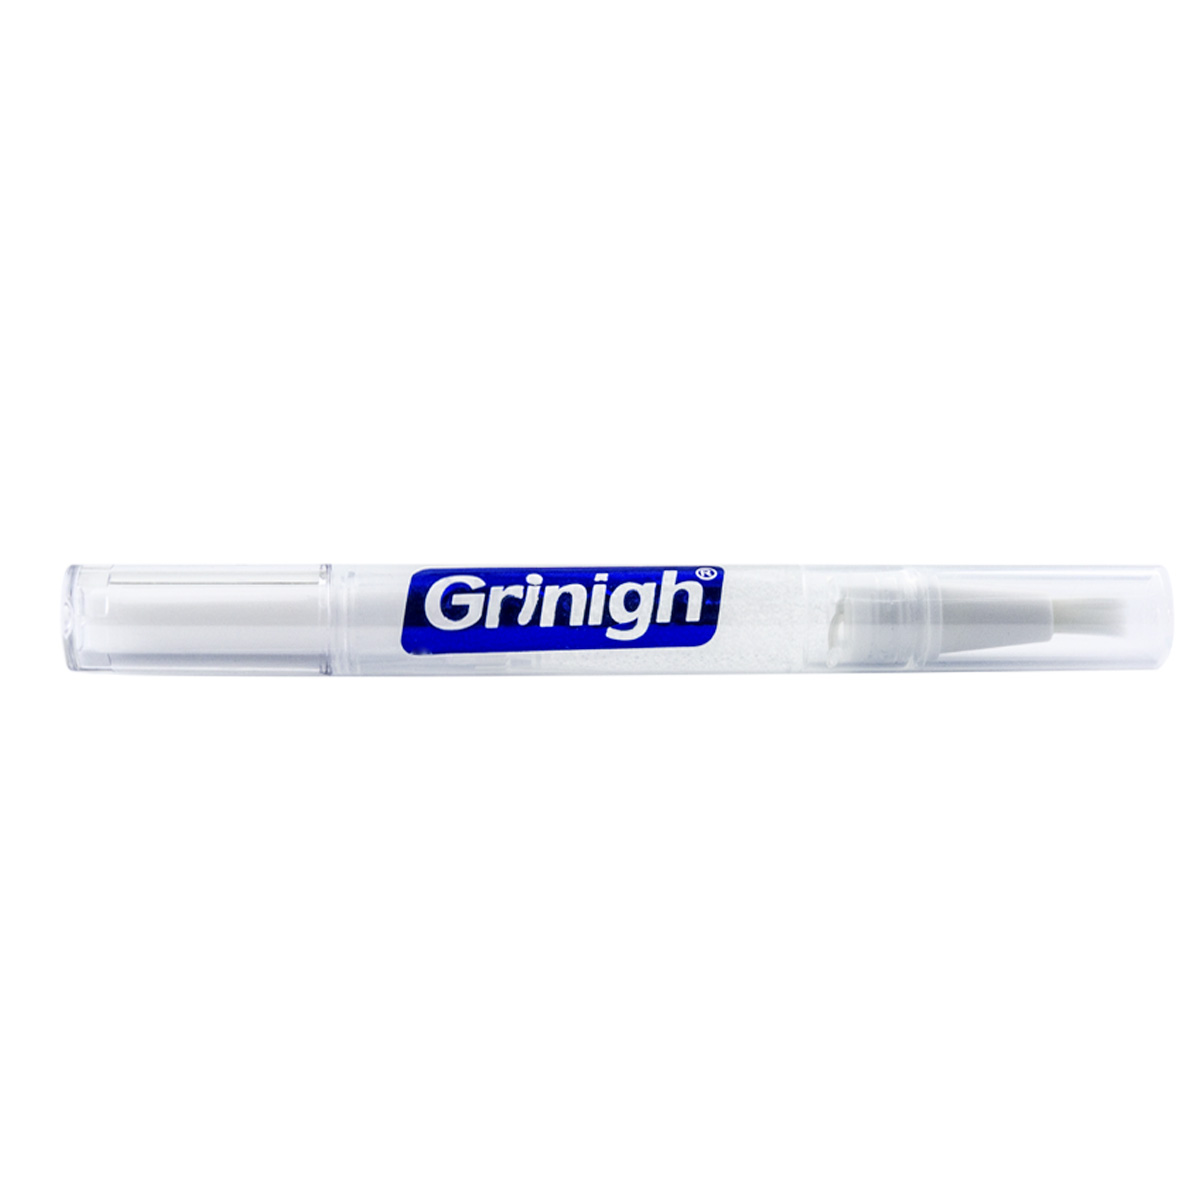 天然成分でGrin365正確な白い歯ホワイトニングアプリケーターペン - 3 カウント - 濃縮強ジェル (6% 過酸化水素)